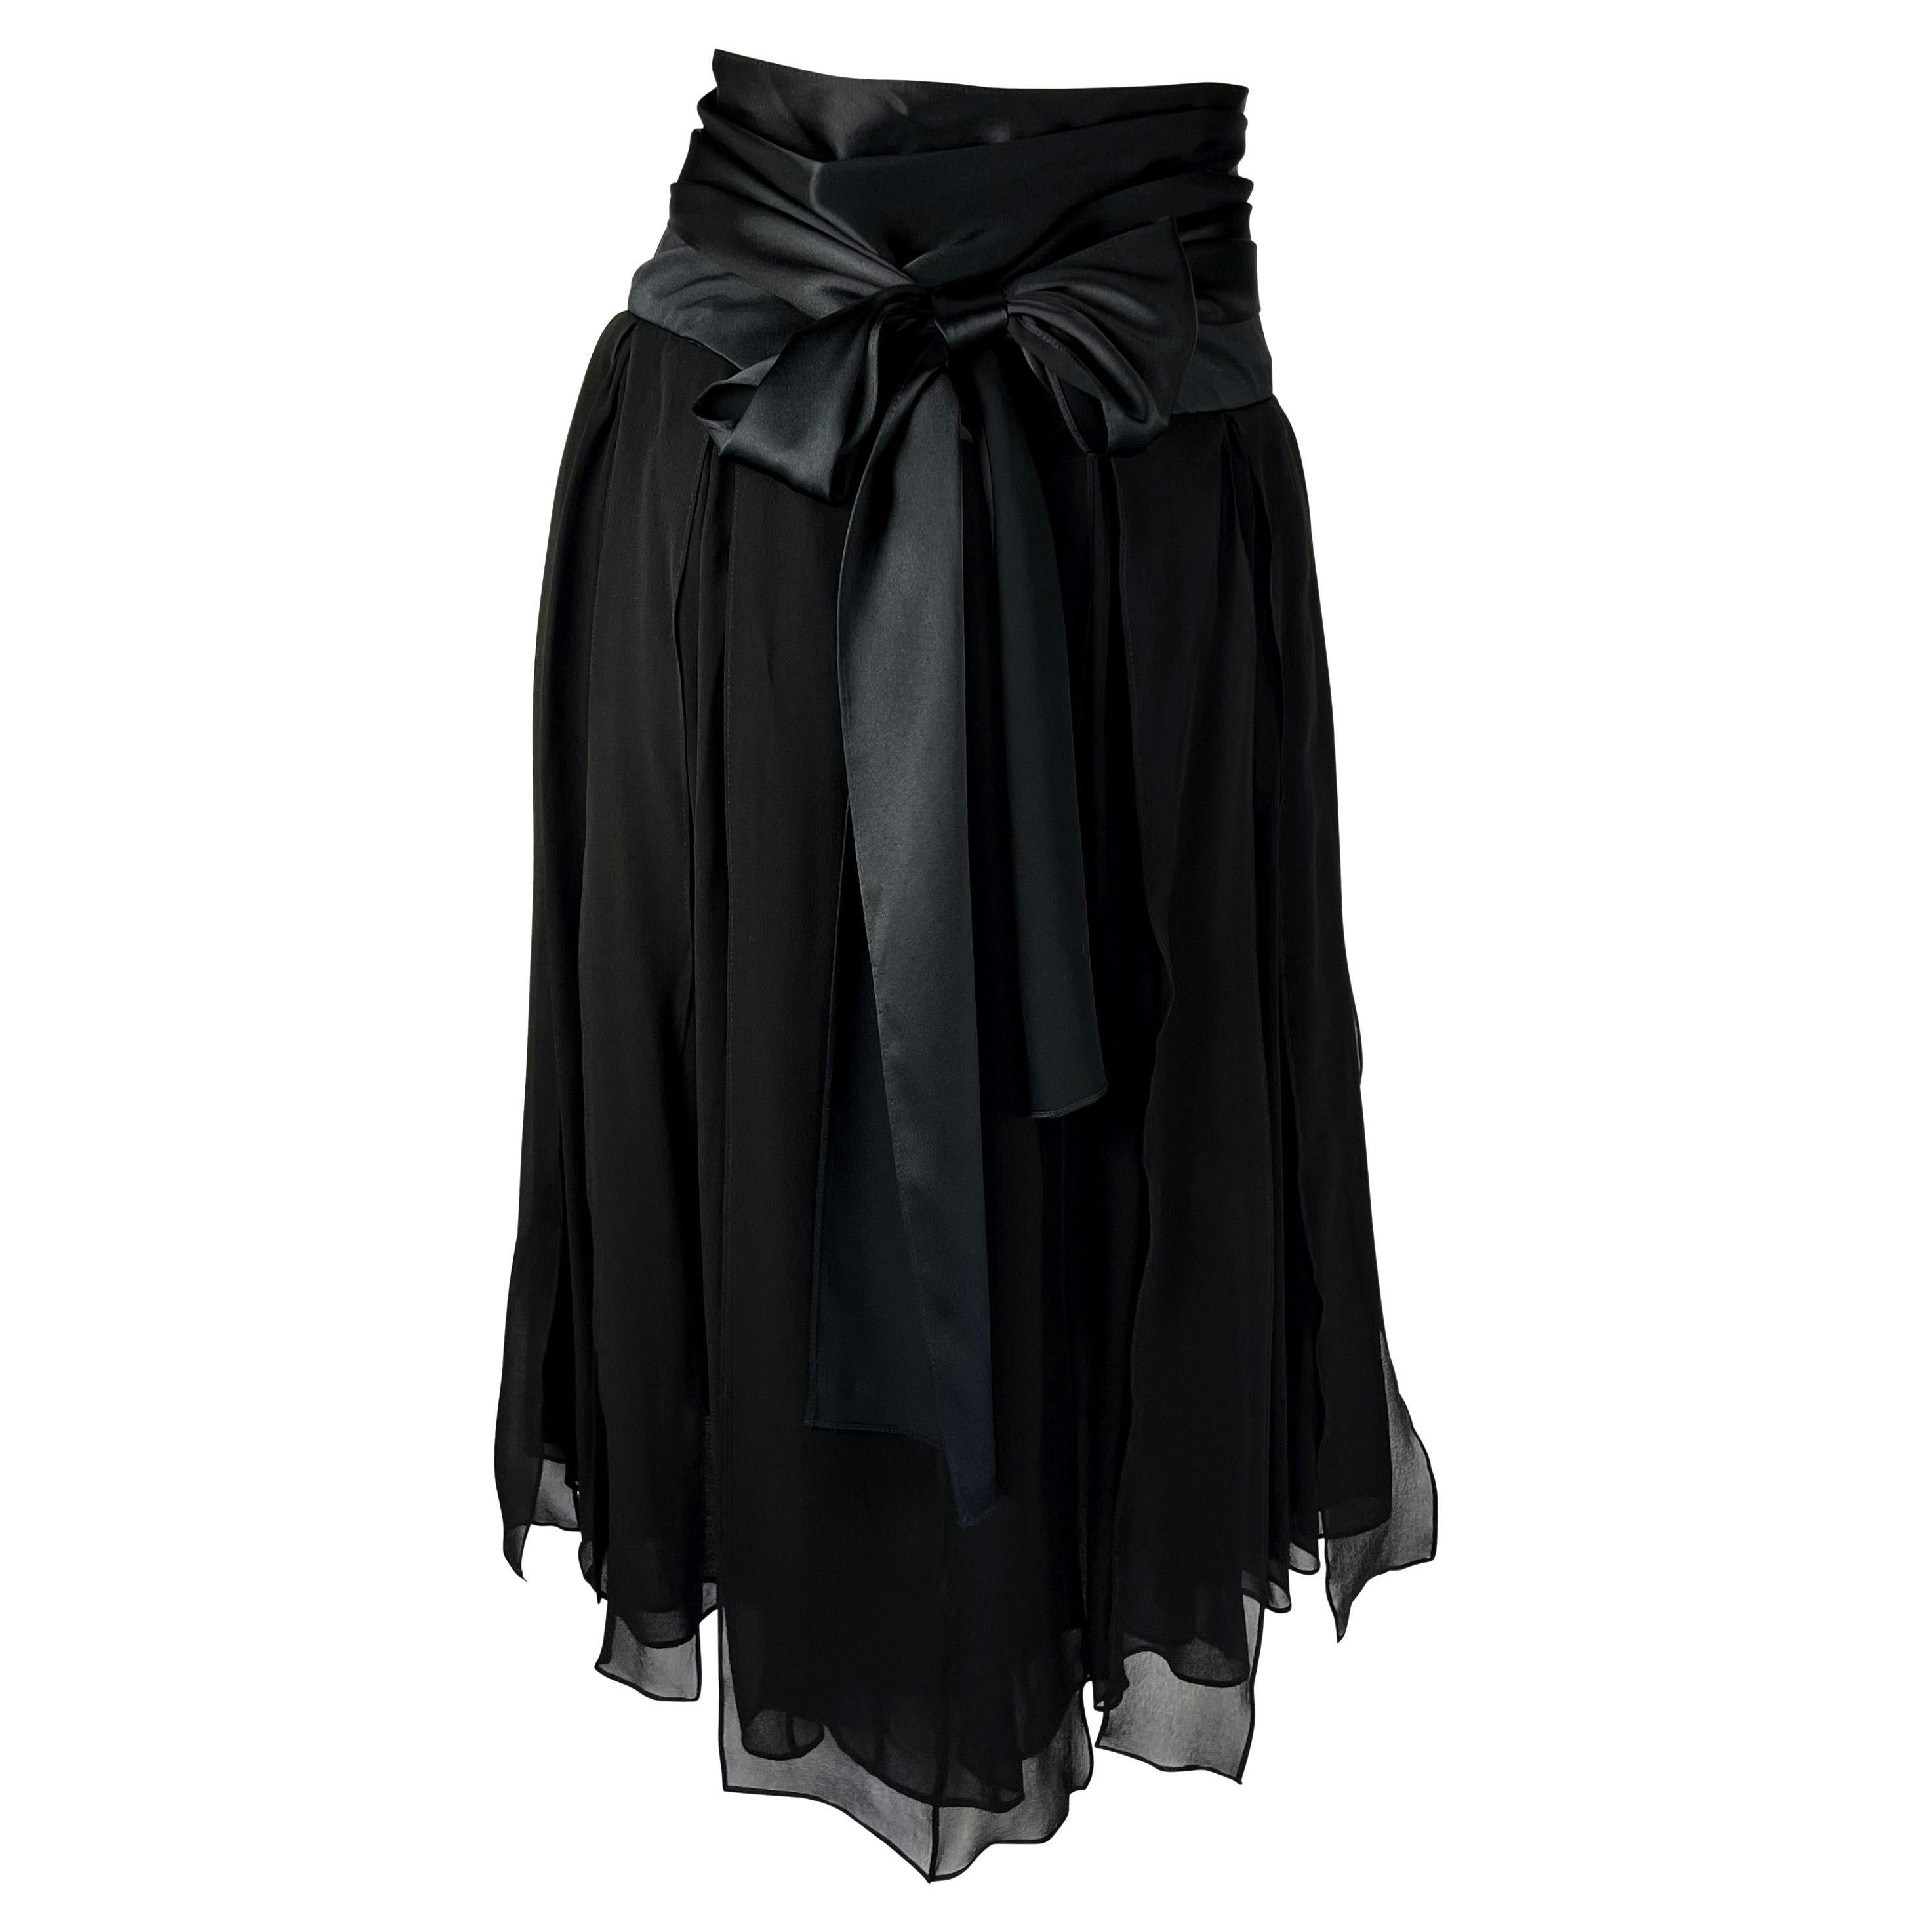 F/W 2003 Yves Saint Laurent by Tom Ford Sheer Black Ruffles Skirt at ...